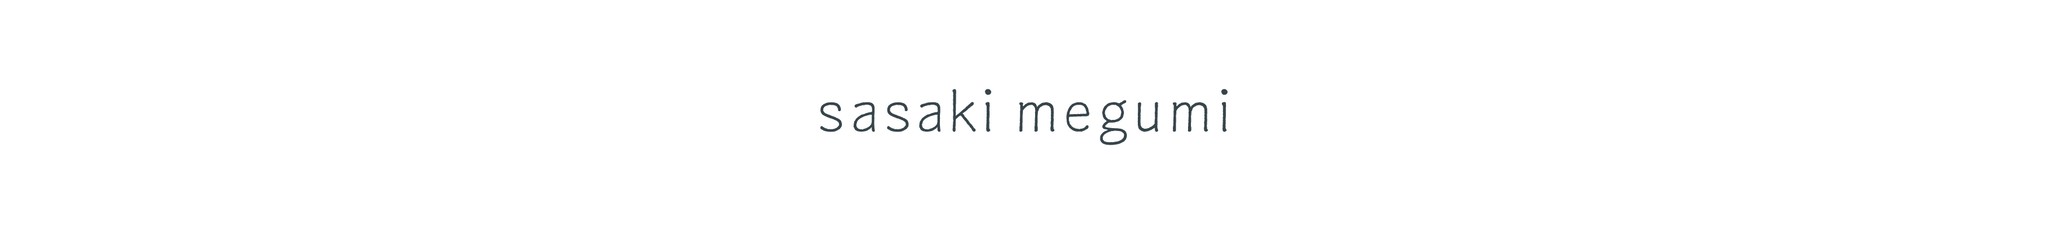 sasaki megumi